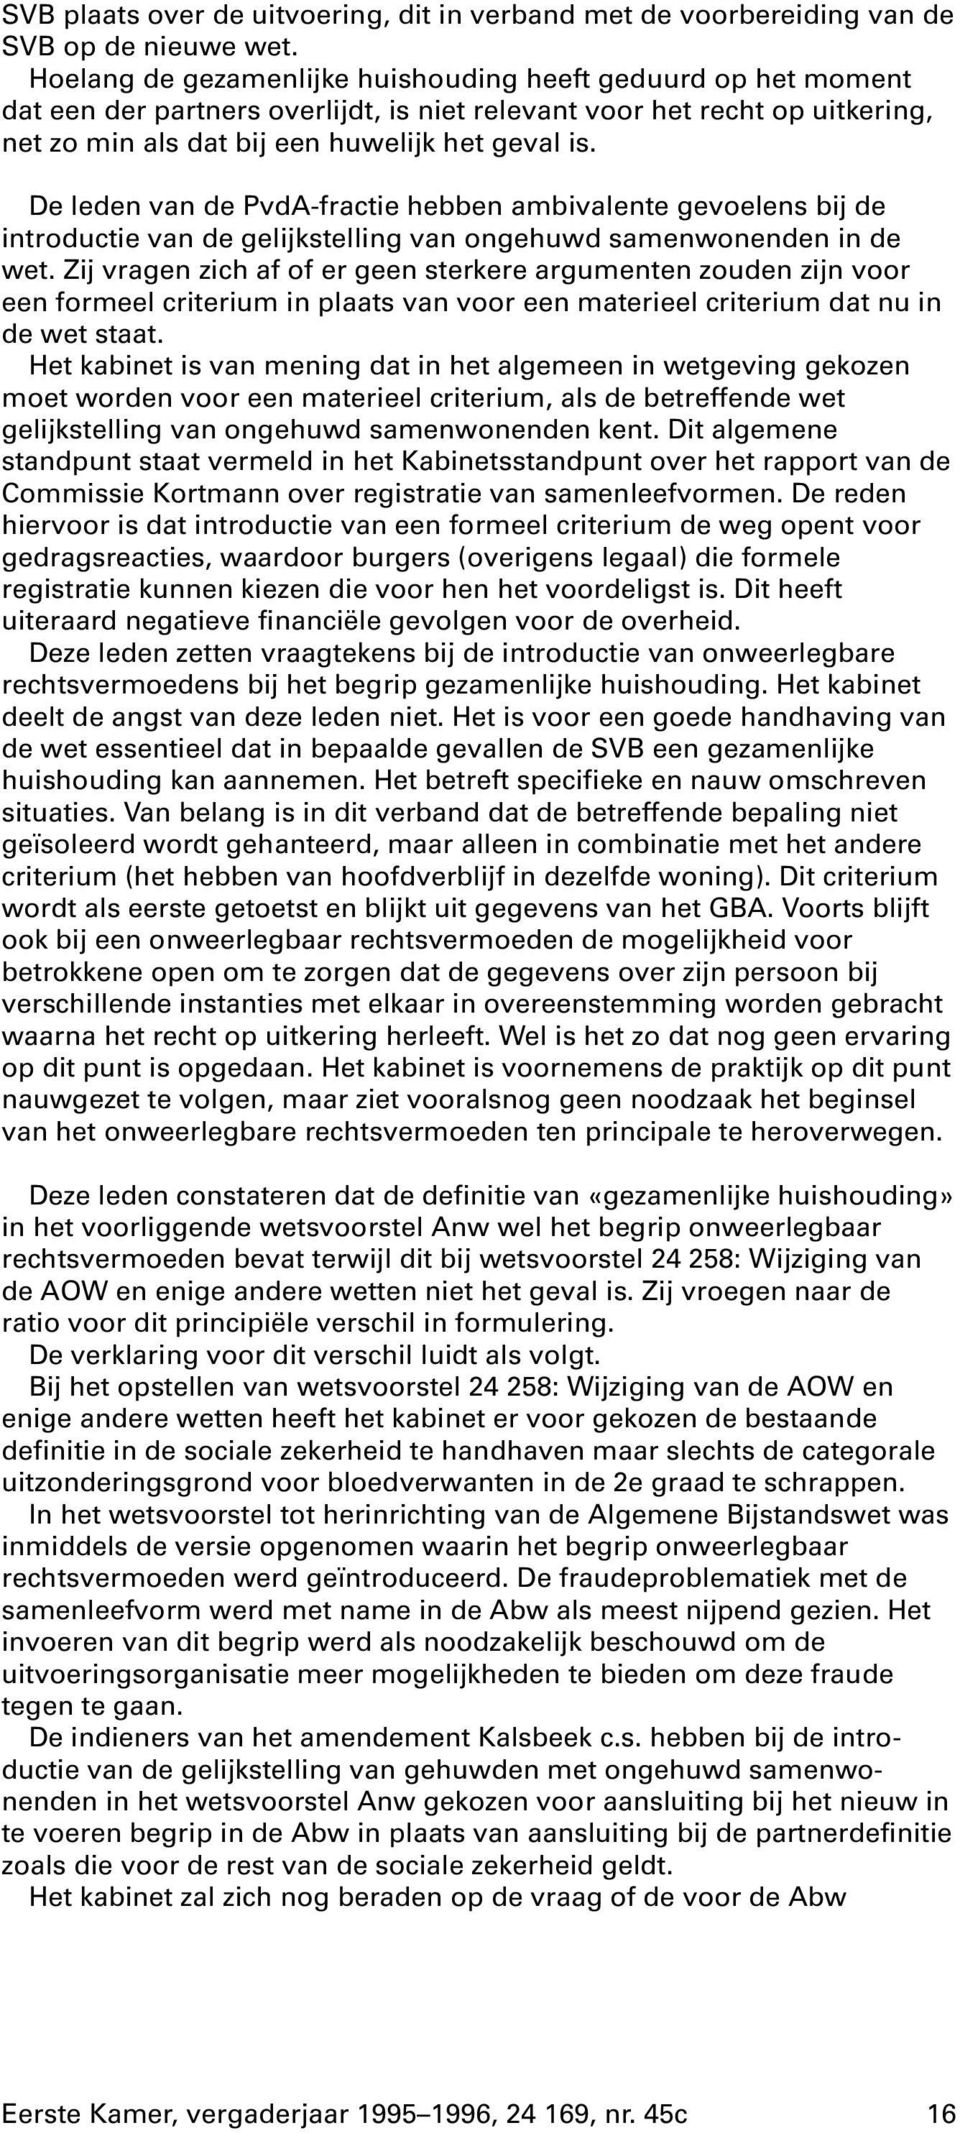 De leden van de PvdA-fractie hebben ambivalente gevoelens bij de introductie van de gelijkstelling van ongehuwd samenwonenden in de wet.